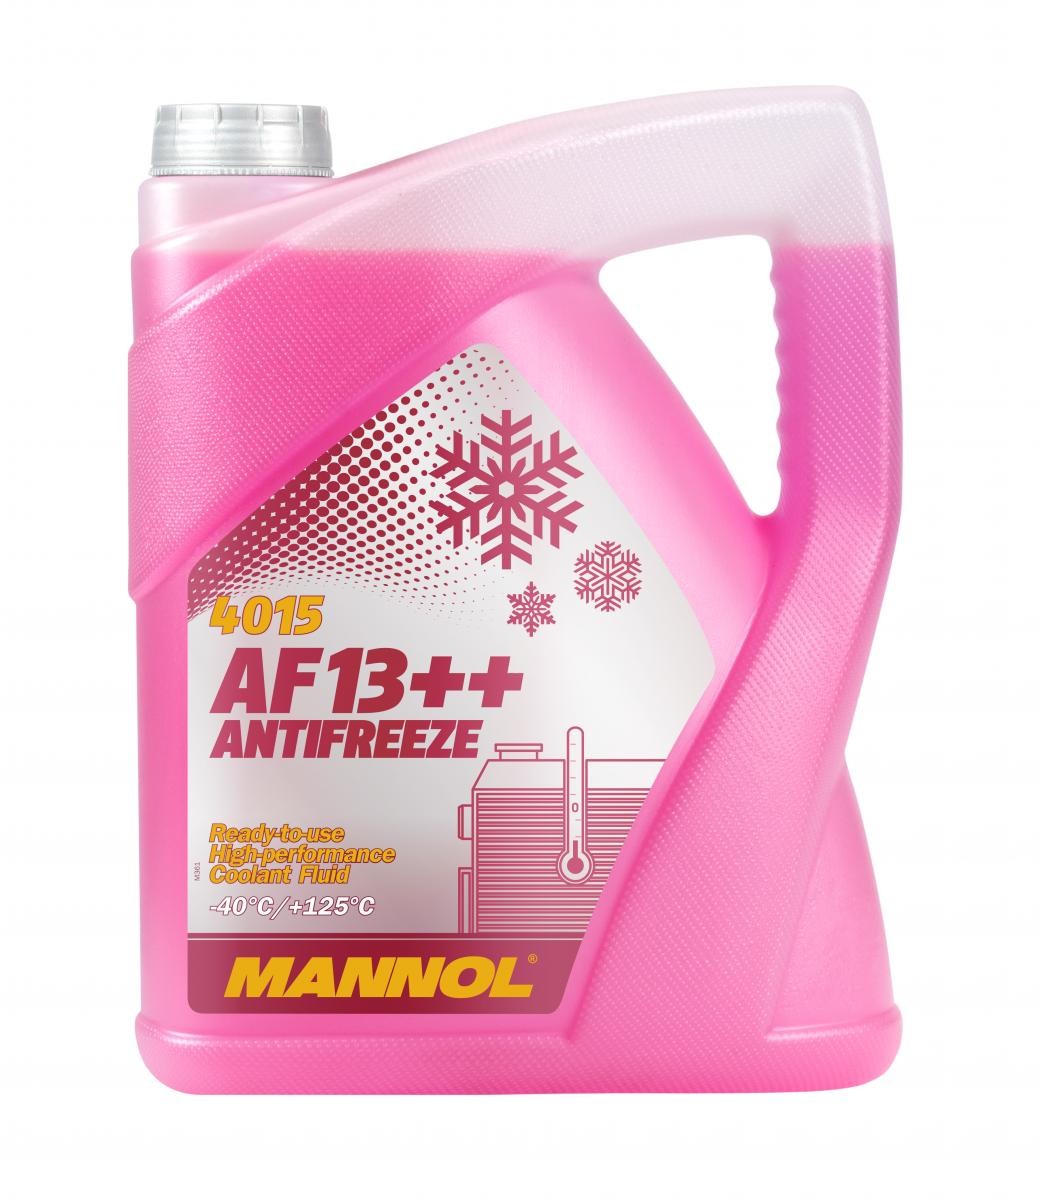 Kupite MANNOL Sredstvo proti zmrzovanju hladilne vode (antifriz) MN4015-5 za MAN po zmerni ceni